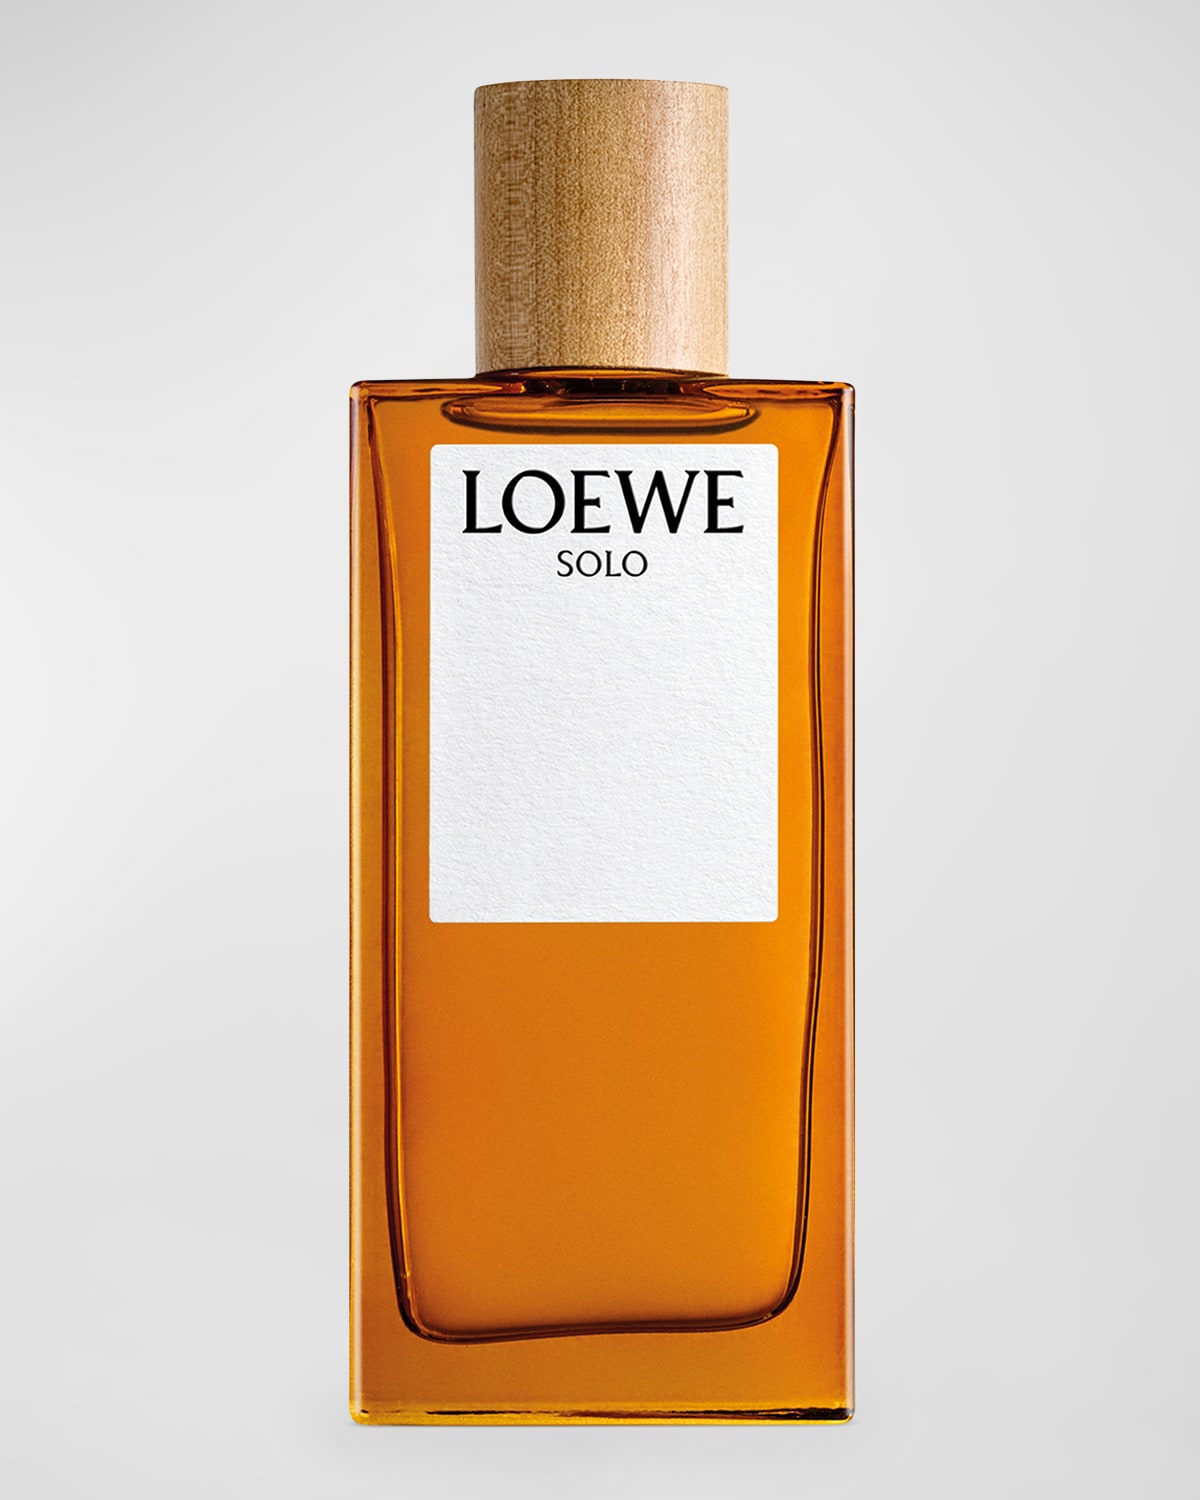 Loewe 3.4 oz. Solo Eau de Toilette